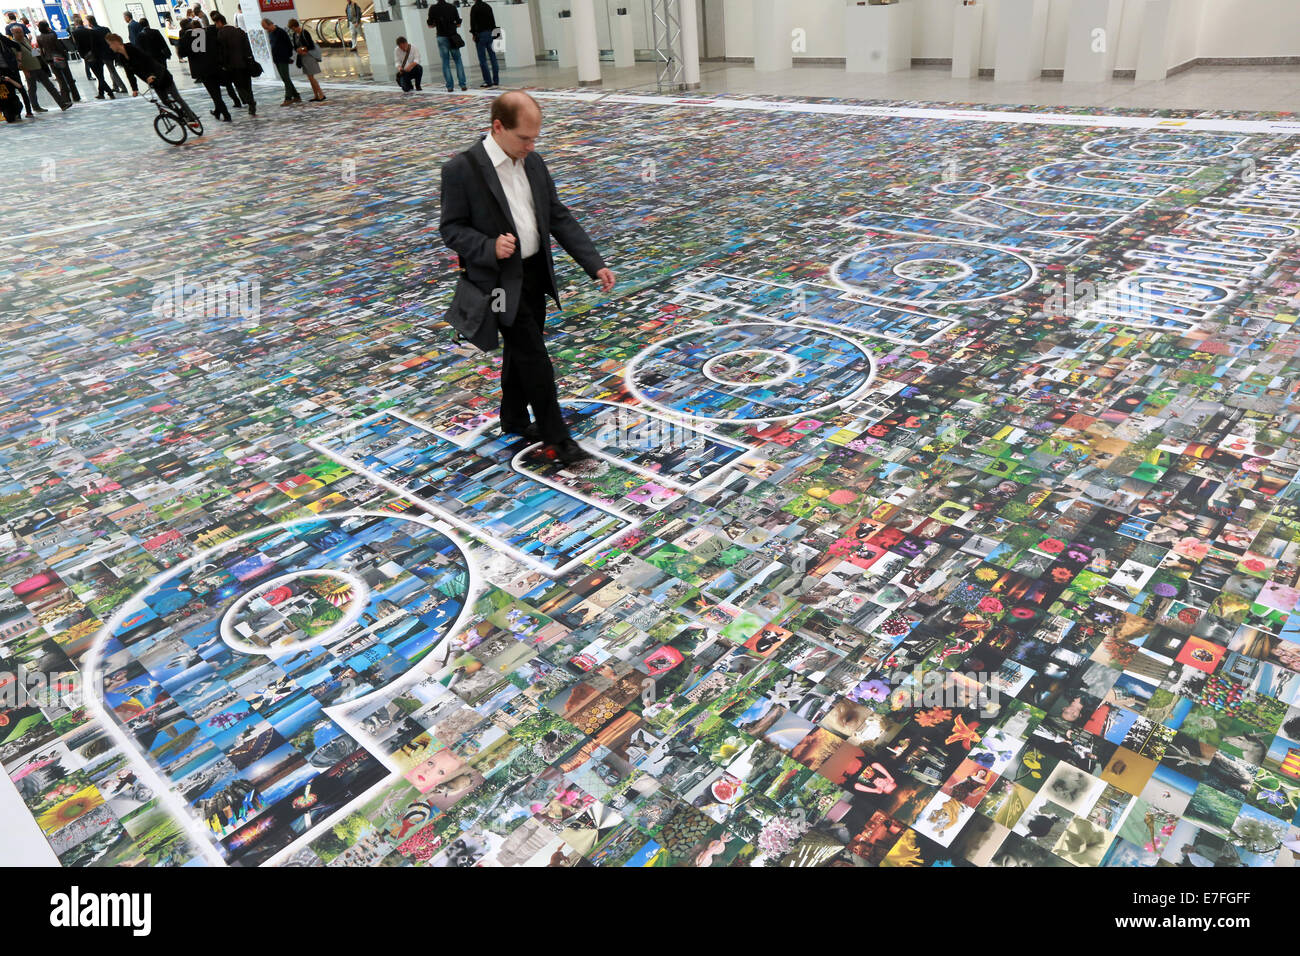 Les gens qui marchent sur un sol recouvert de milliers de photos, Photokina 2014, Cologne, Allemagne Banque D'Images